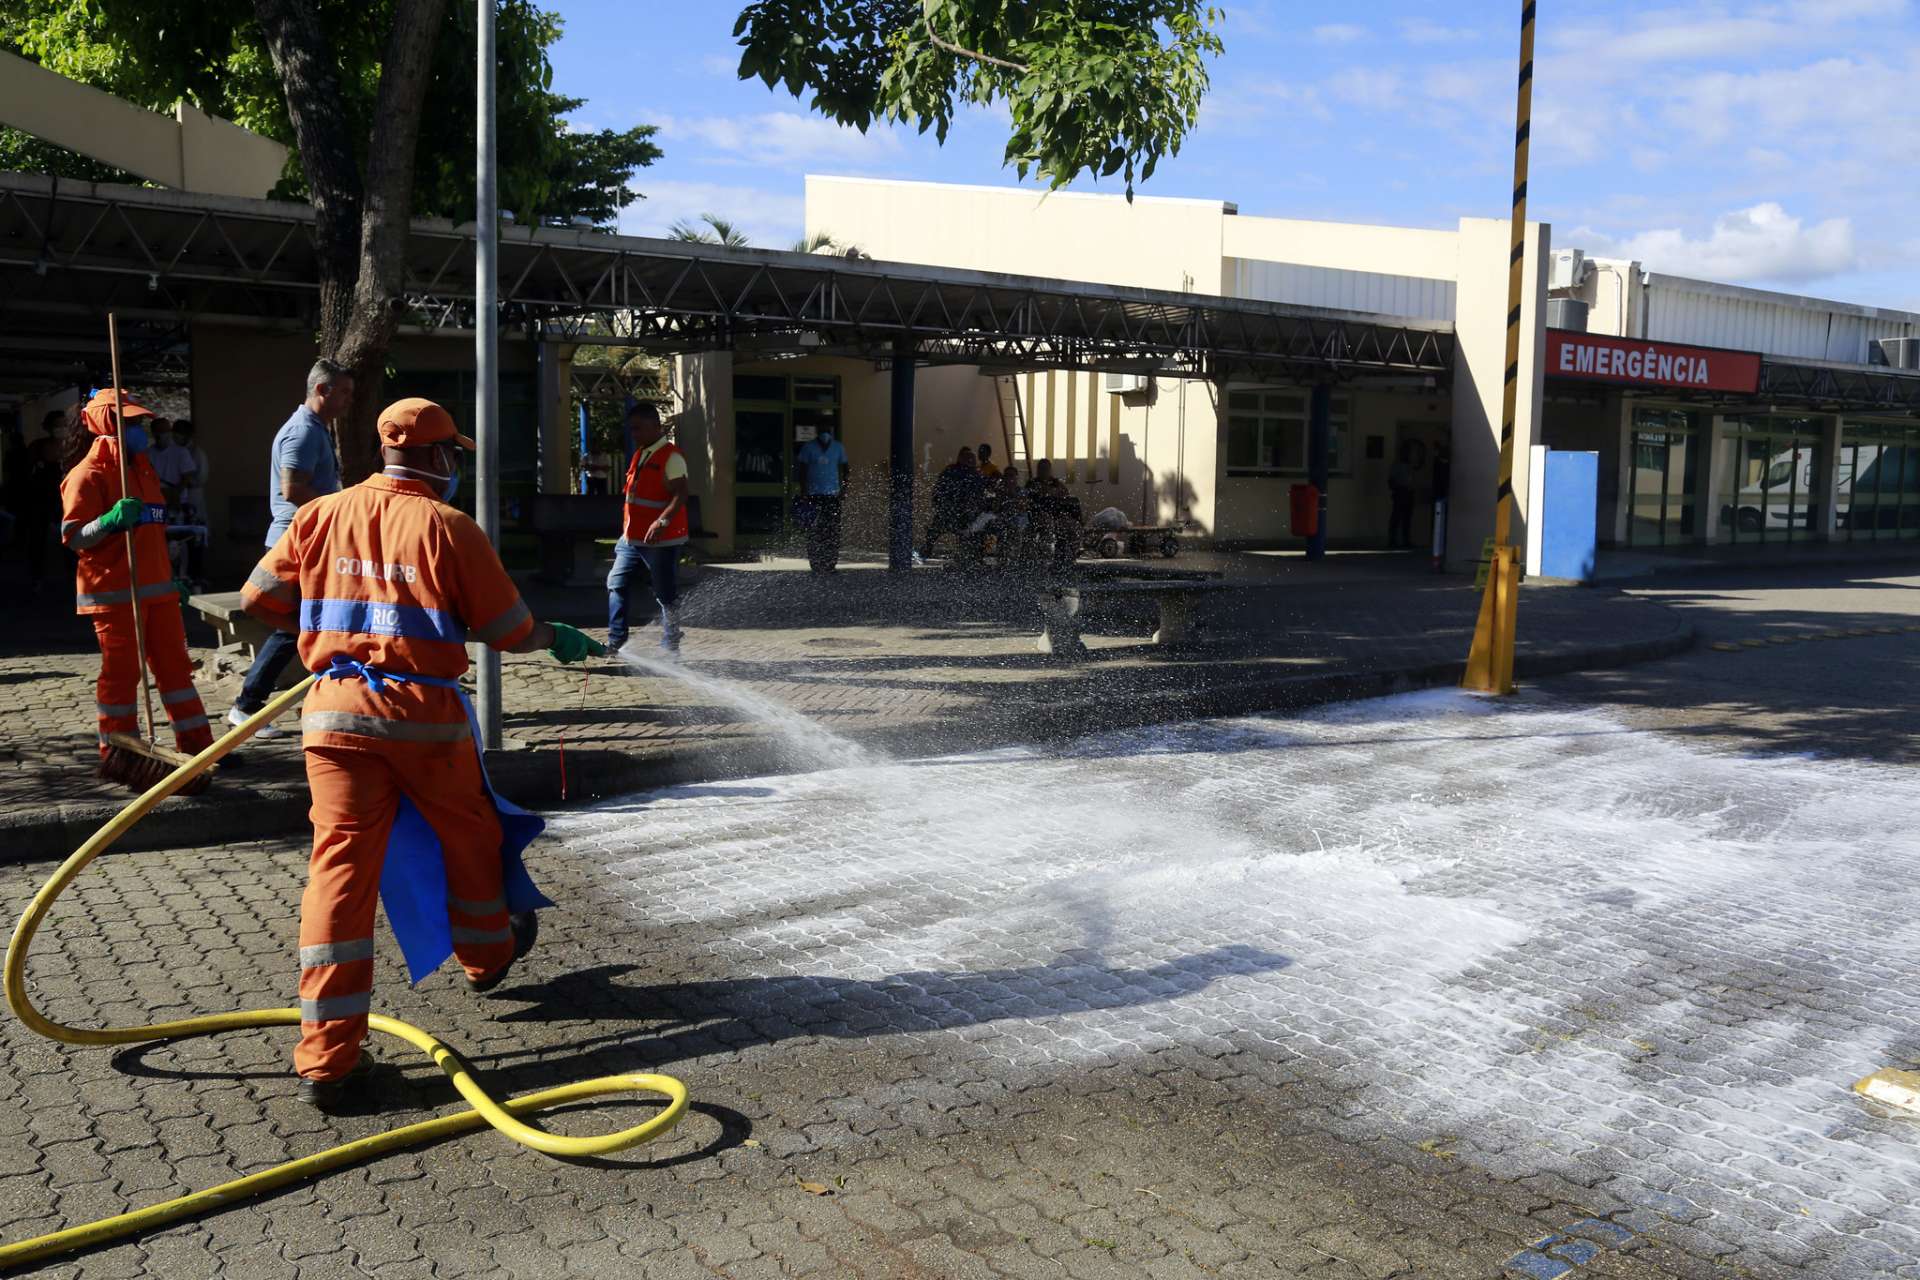 Garis fazem ação de desinfecção em frente ao Hospital Lourenço Jorge. Foto: Marcos de Paula/Prefeitura do Rio